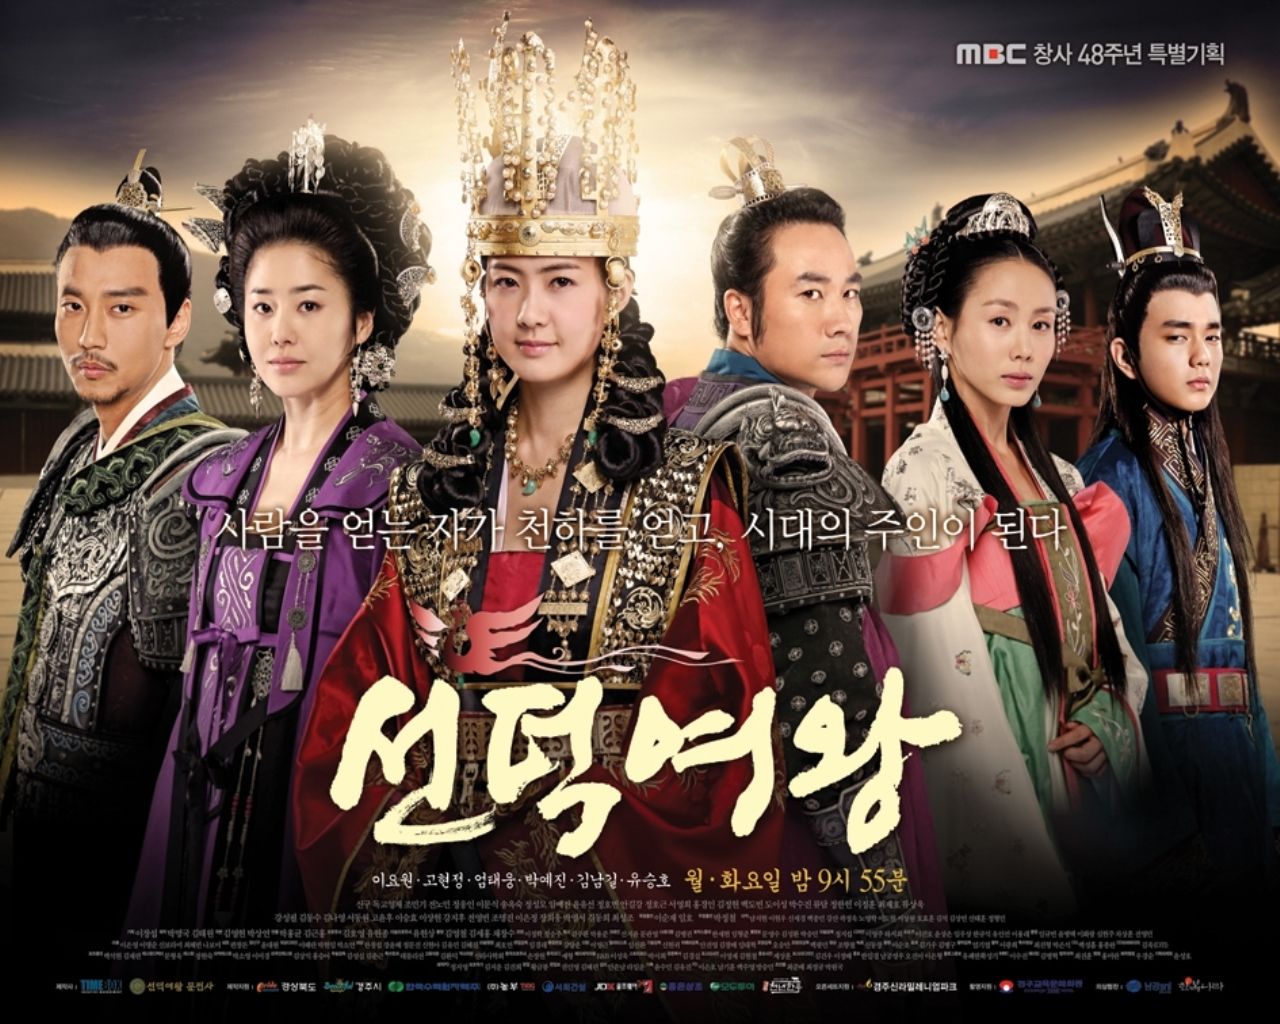 Drama Korea Kerajaan Yang Pernah Tayang Di Indosiar Yamay 5 